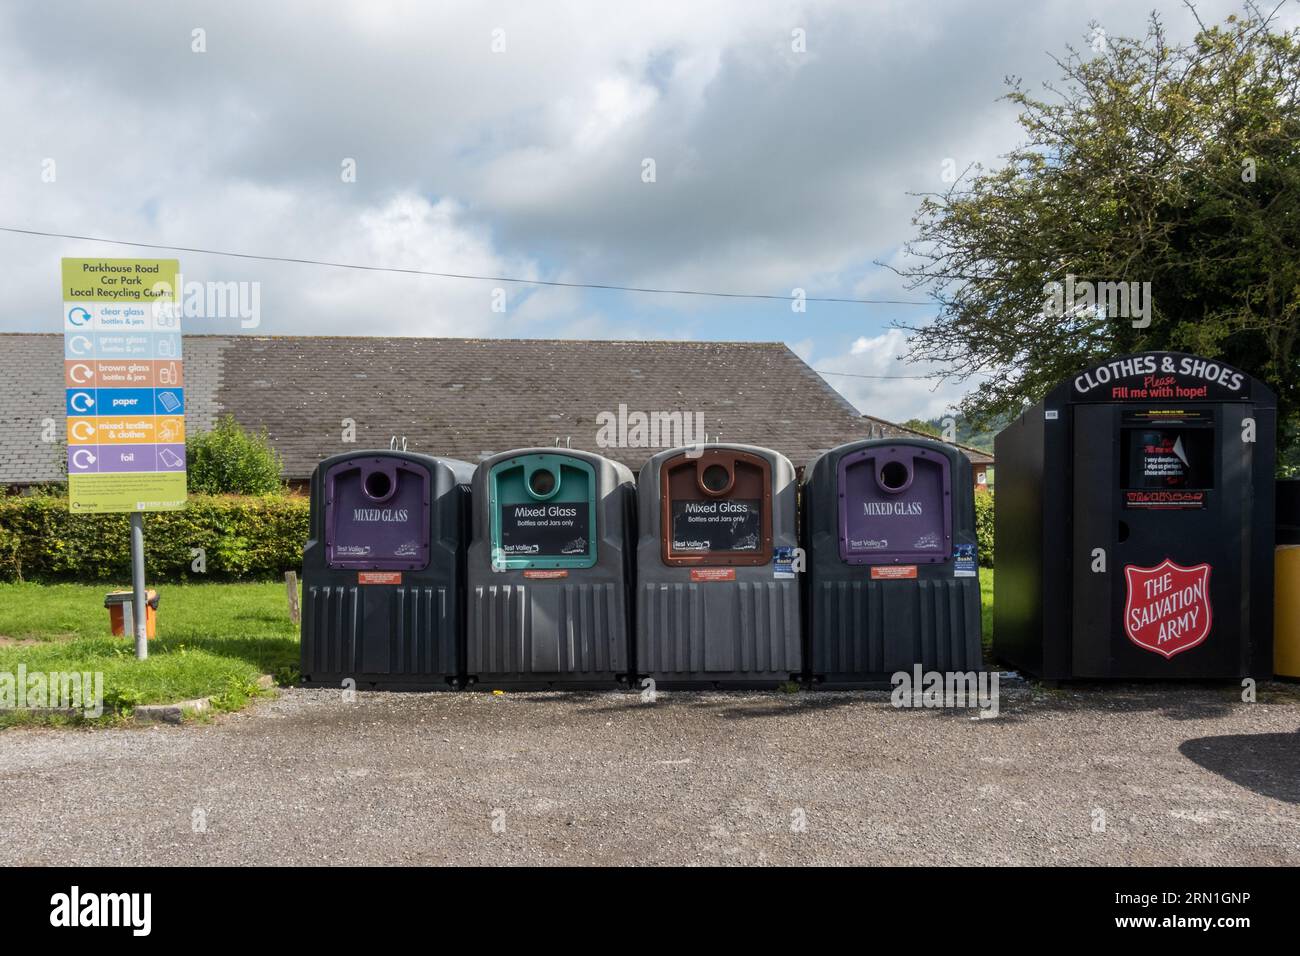 Punto di riciclaggio locale in un parcheggio del villaggio con contenitori per diversi colori di vetro e un cestino dell'esercito della salvezza per tessuti vestiti scarpe, Inghilterra, Regno Unito Foto Stock